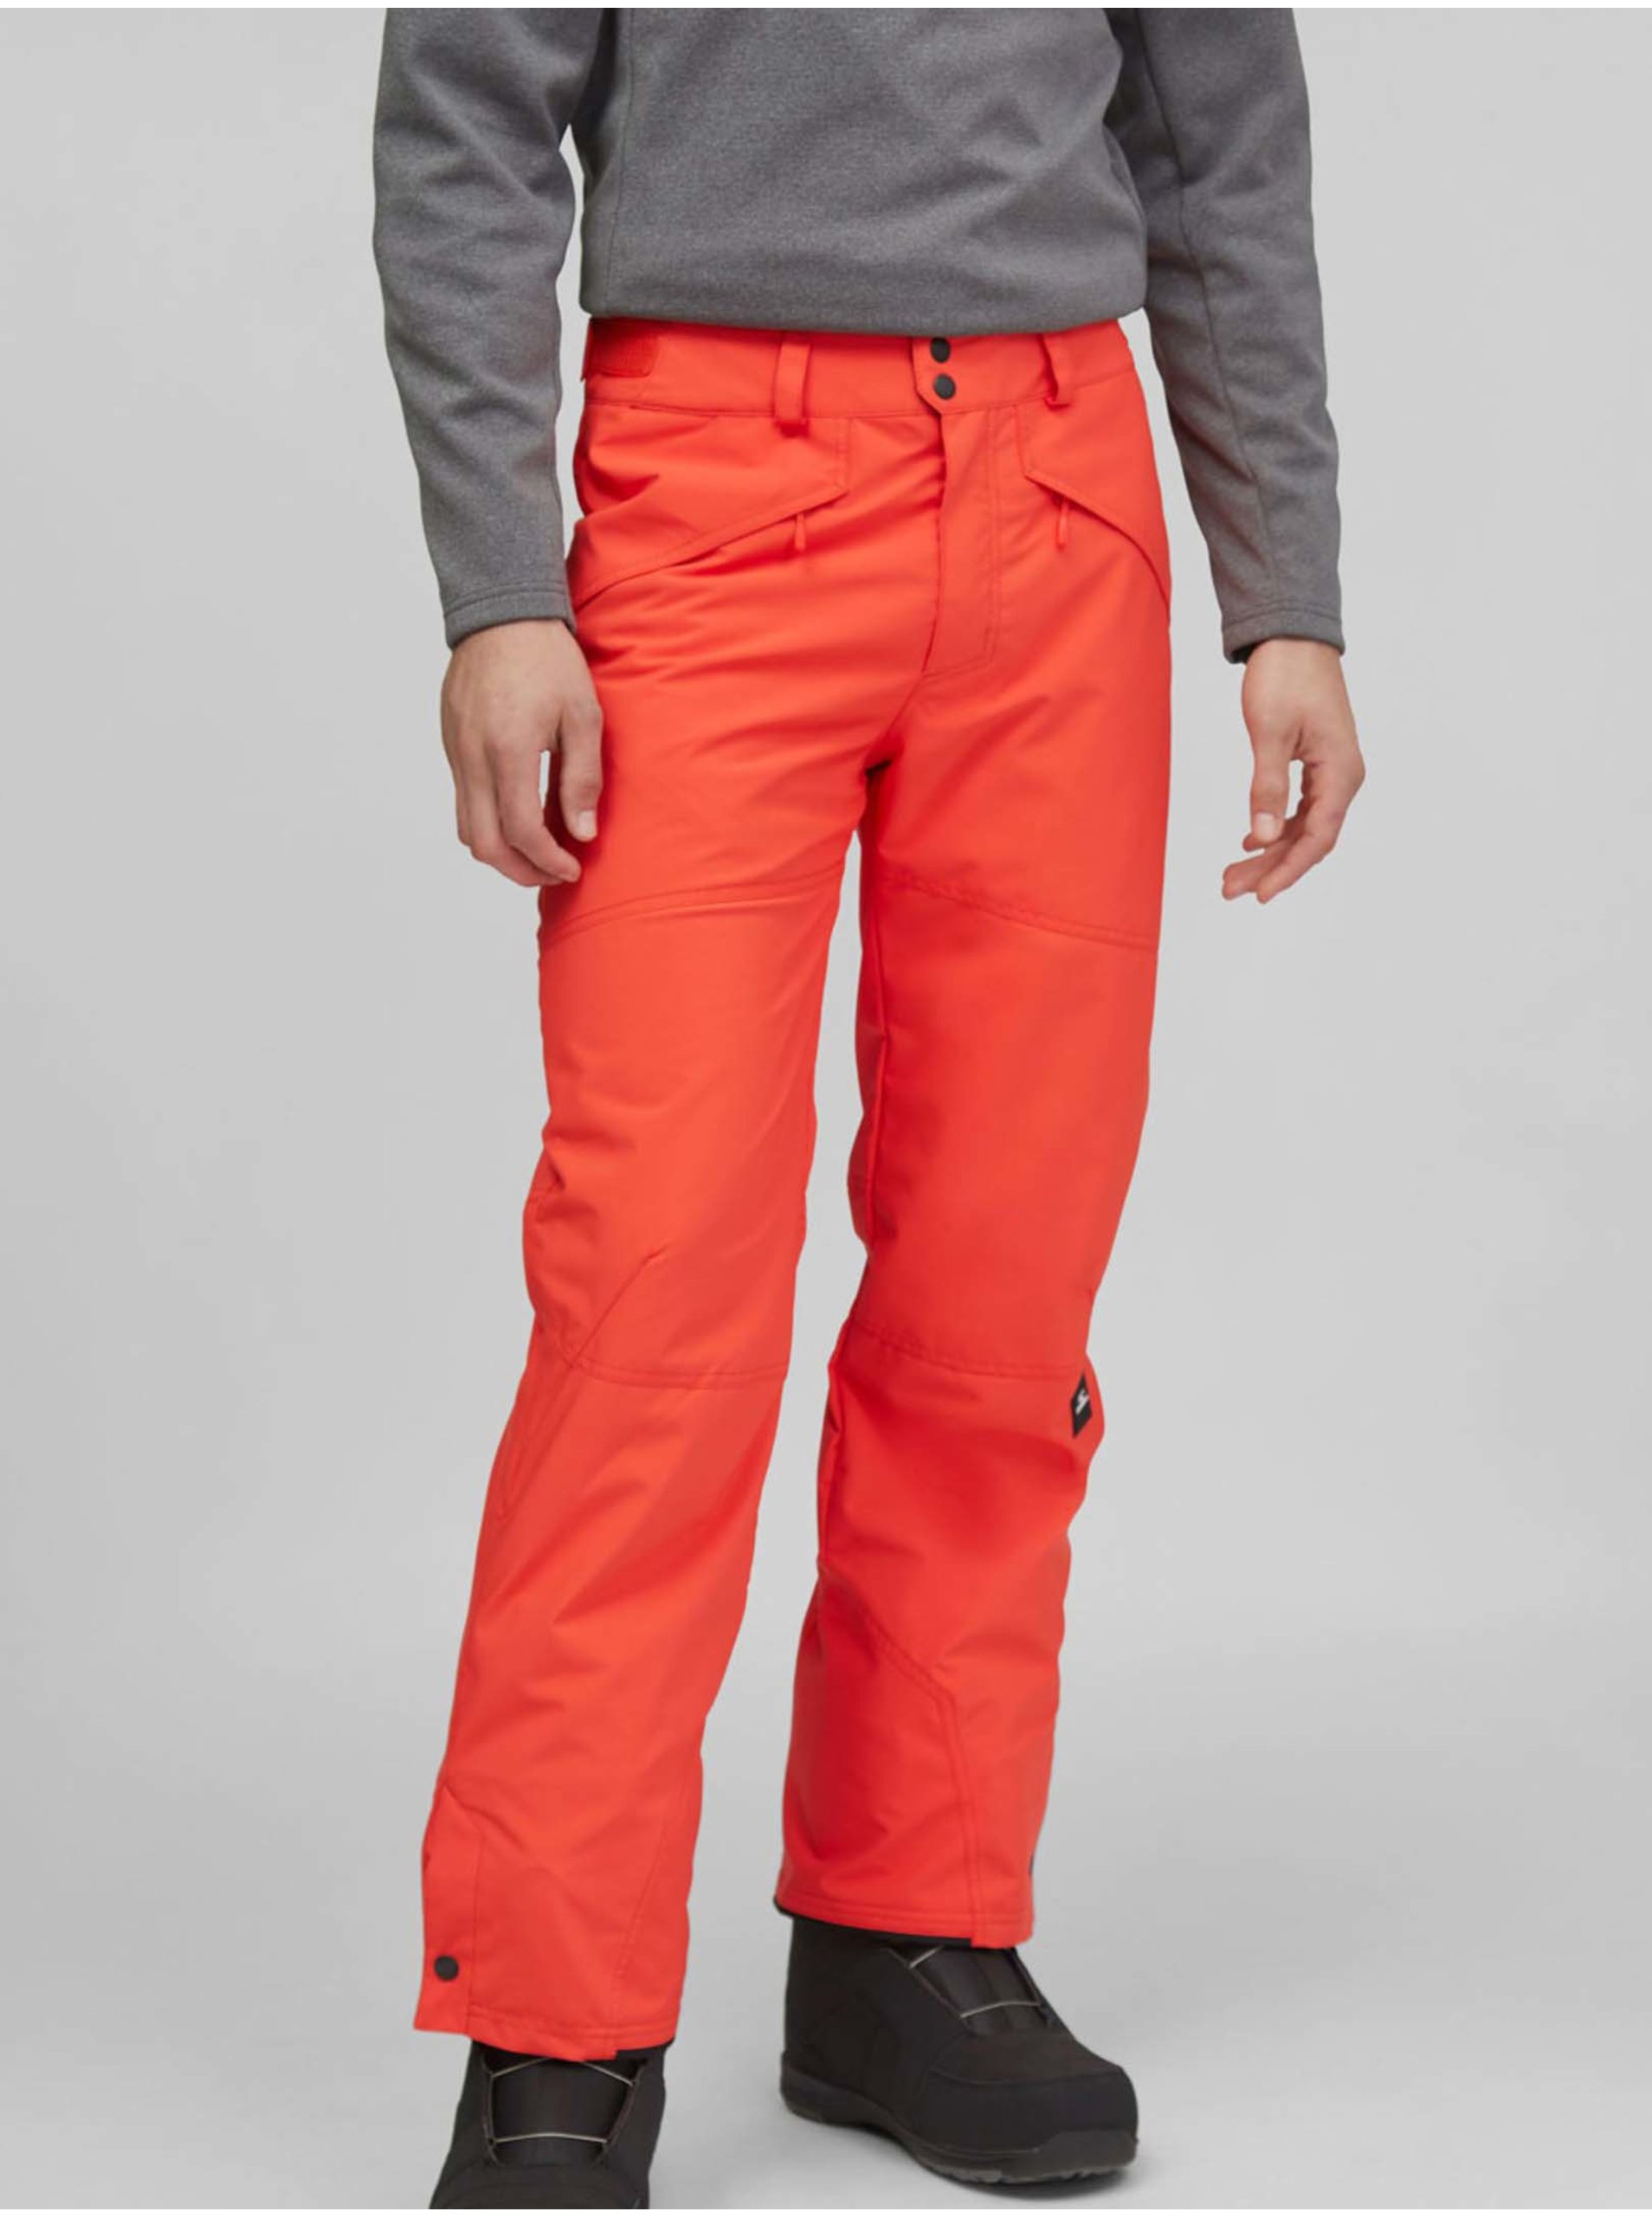 Lacno Oranžové pánske lyžiarske/snowboardové nohavice O'Neill HAMMER PANT